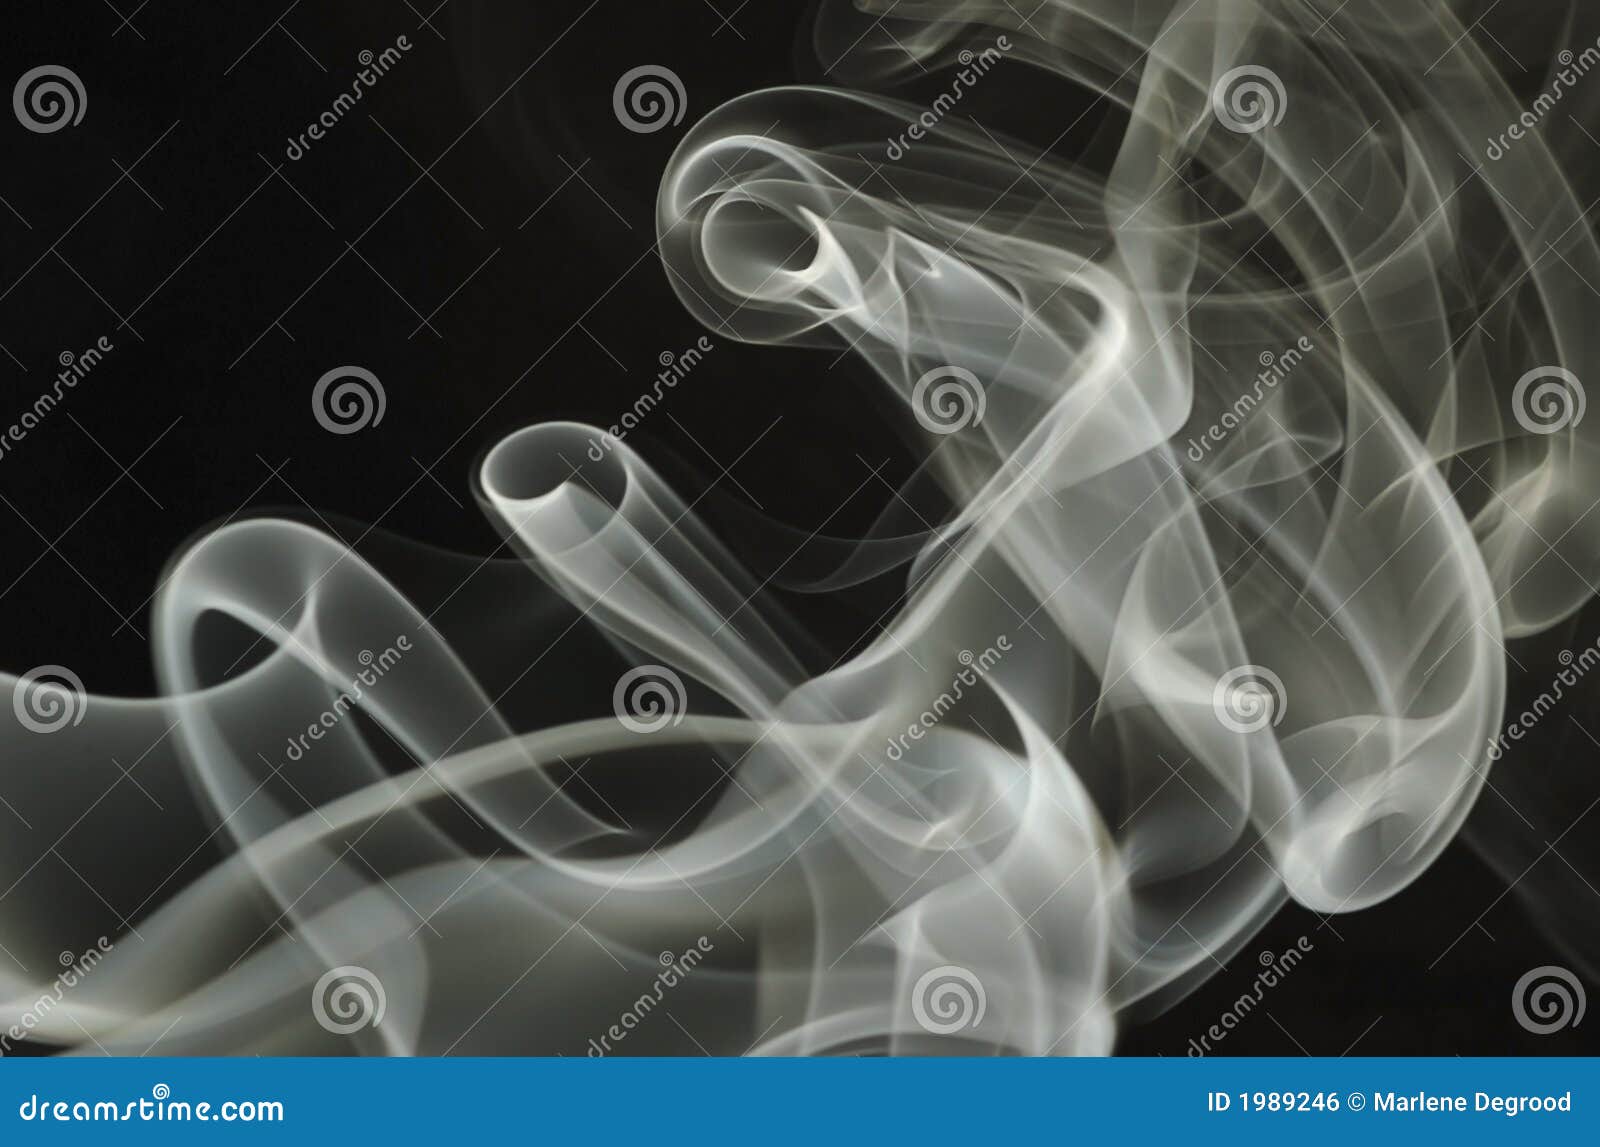 tubular smoke